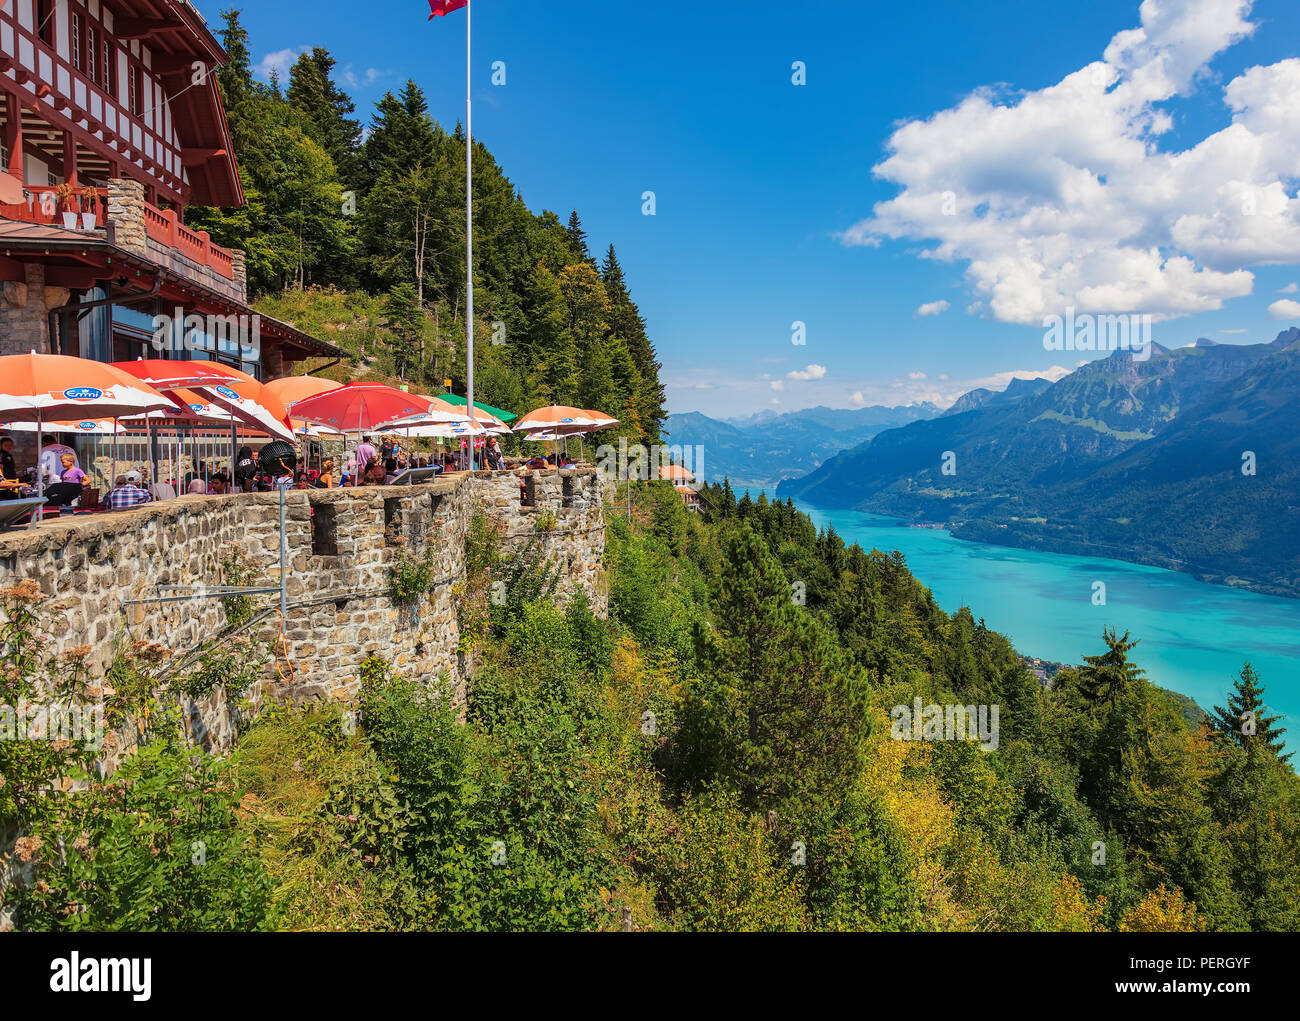 Mt. Harder, Svizzera - 7 Agosto 2018: vista dal Harderkulm verso il lago Brienzsee, persone presso il ristorante. Il Harderkulm, anche di cui al Foto Stock